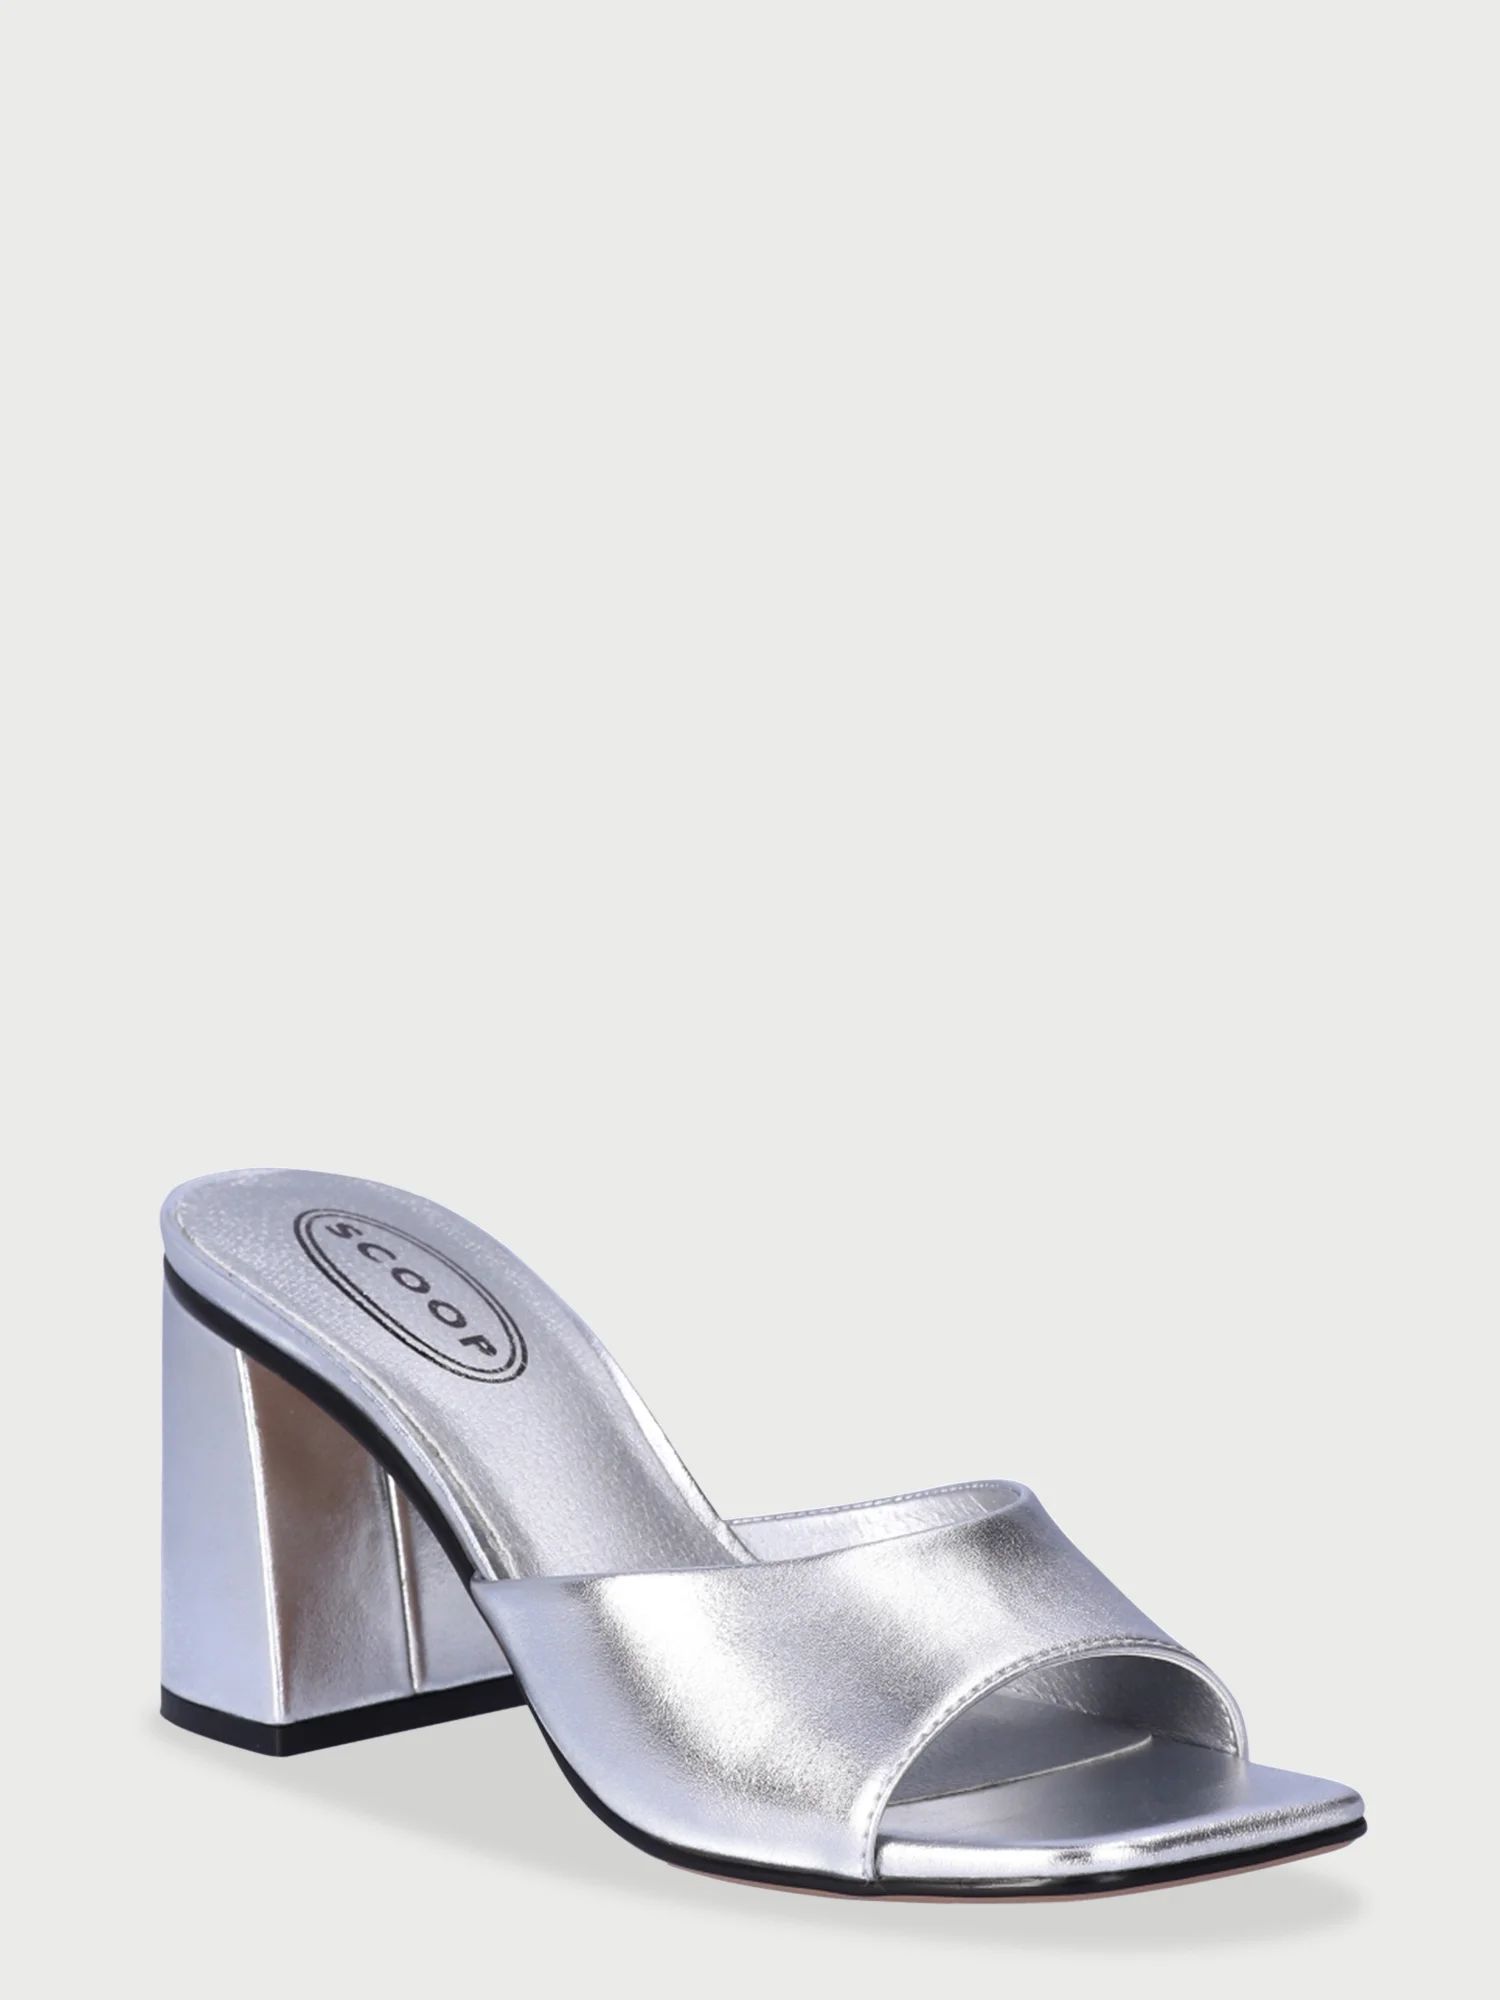 Scoop Women's Block Heel Mule Sandals | Walmart (US)